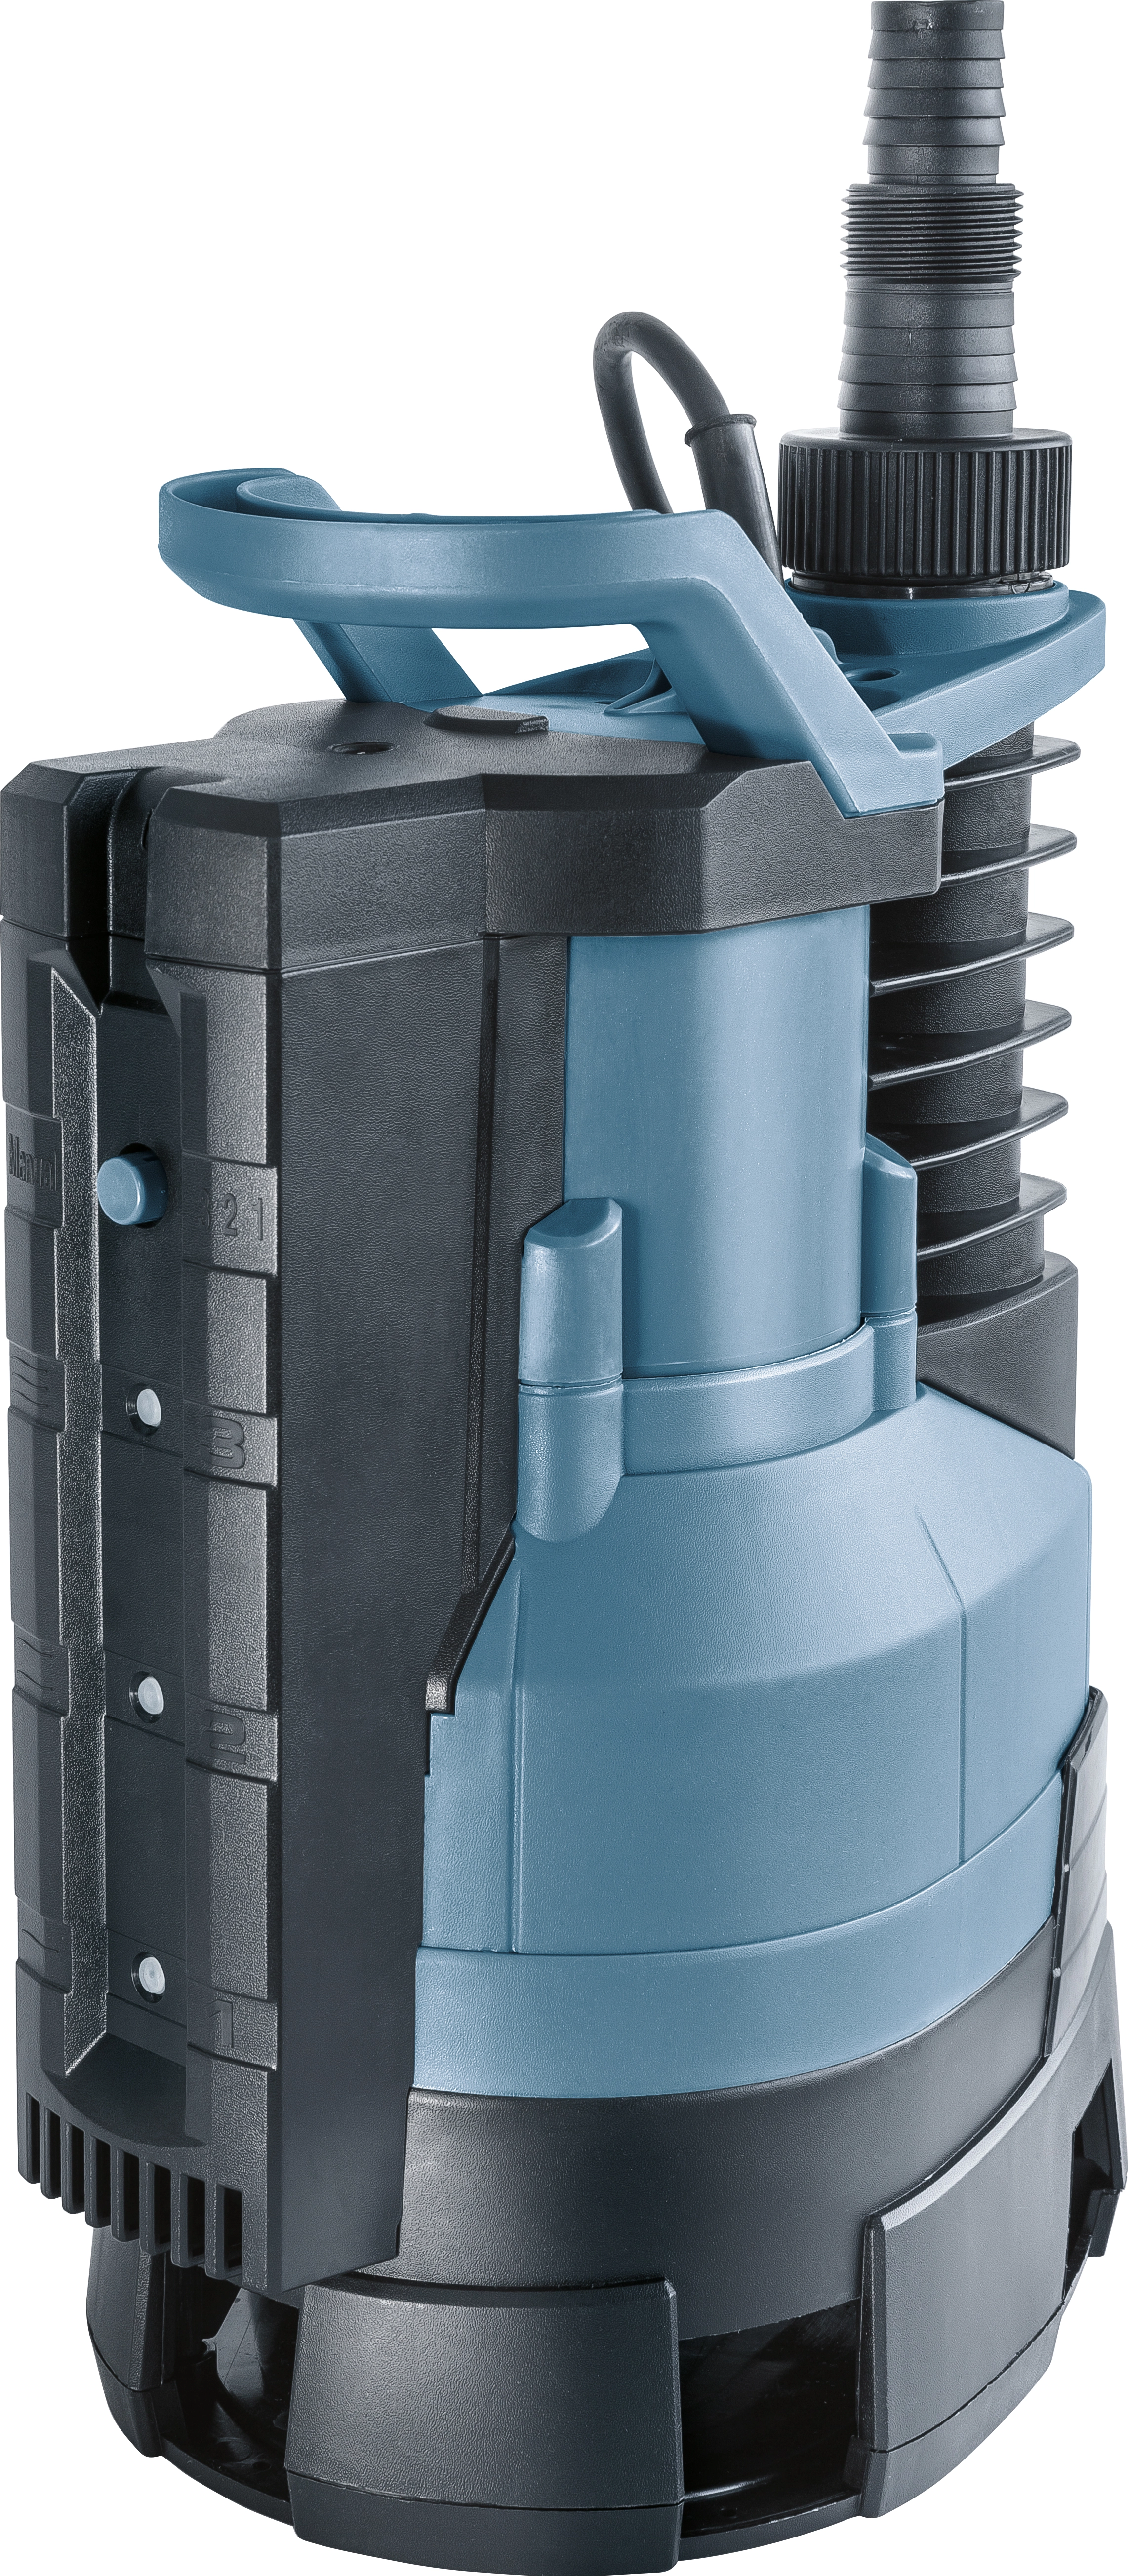 Tauchpumpe 750 W Schmutzwasser Sensorautomatik TPS 13500/S kaufen bei OBI